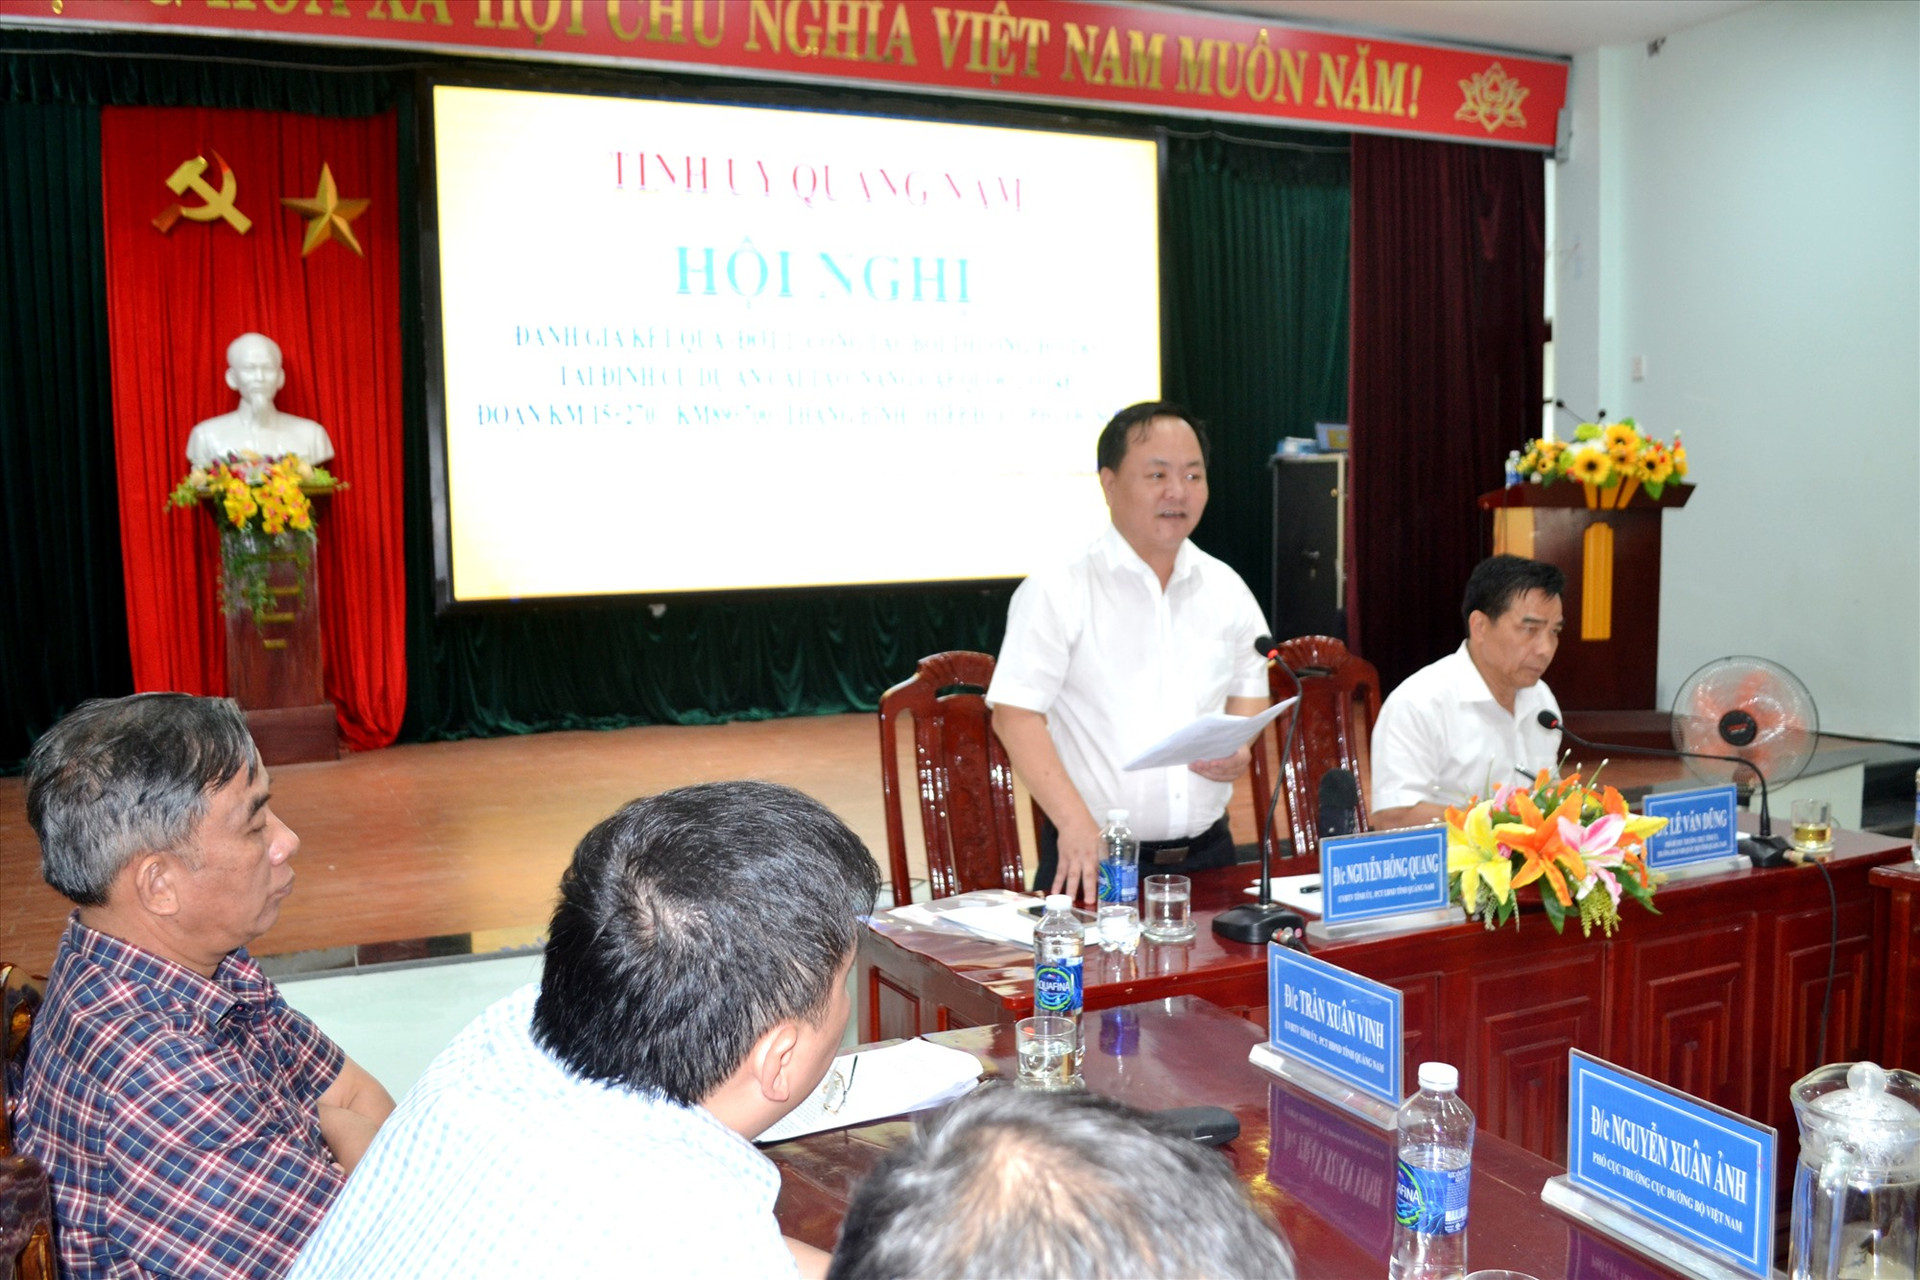 Phó Chủ tịch UBND tỉnh Nguyễn Hồng Quang chỉ đạo công việc tiếp theo trong thời gian tới. Ảnh: C.T